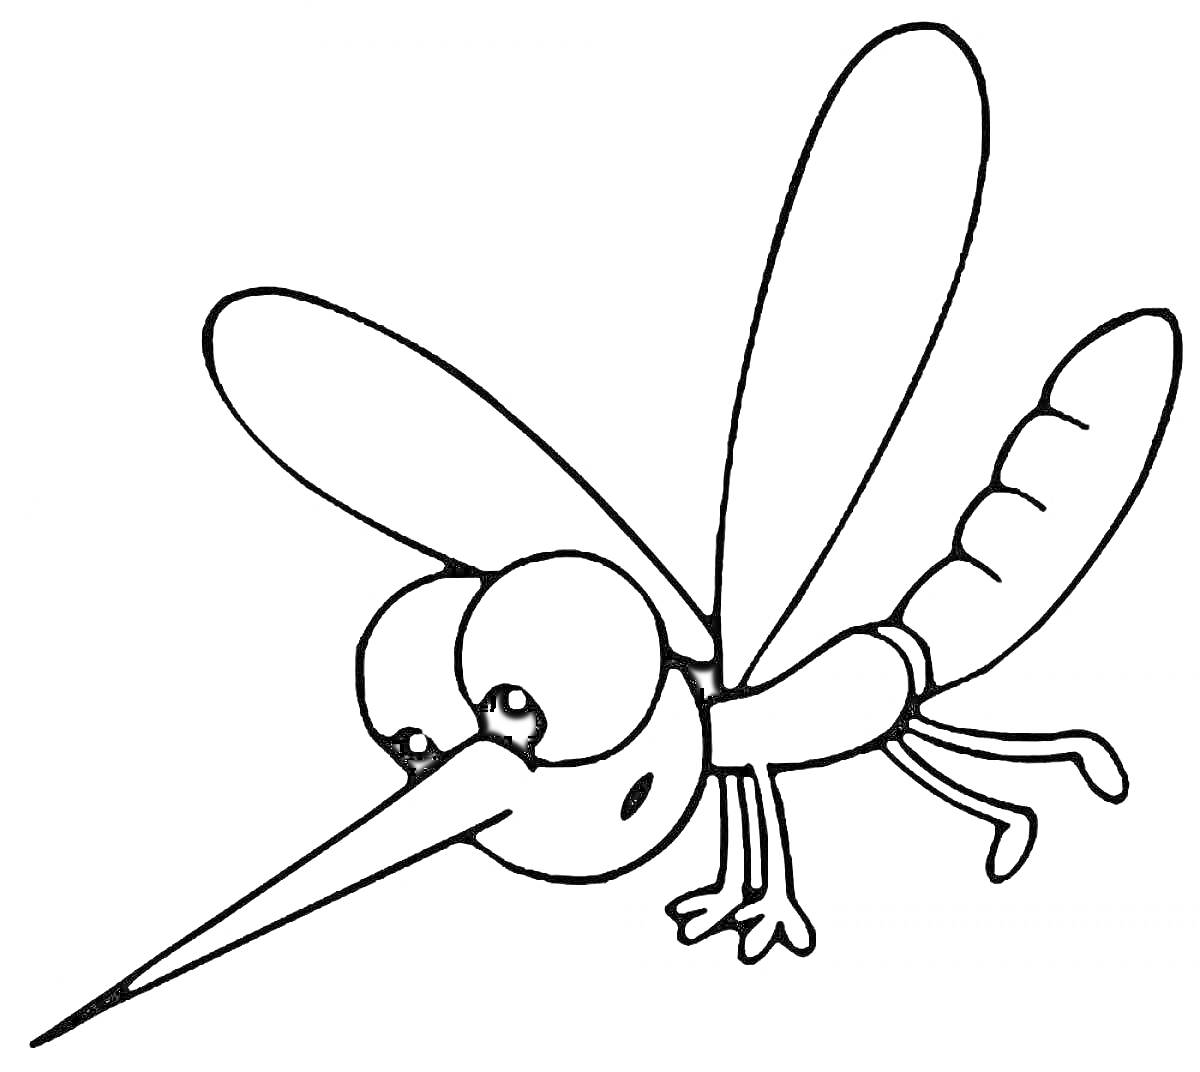 Раскраска Комар с большими глазами, длинным хоботком, четырьмя лапками и парой крыльев